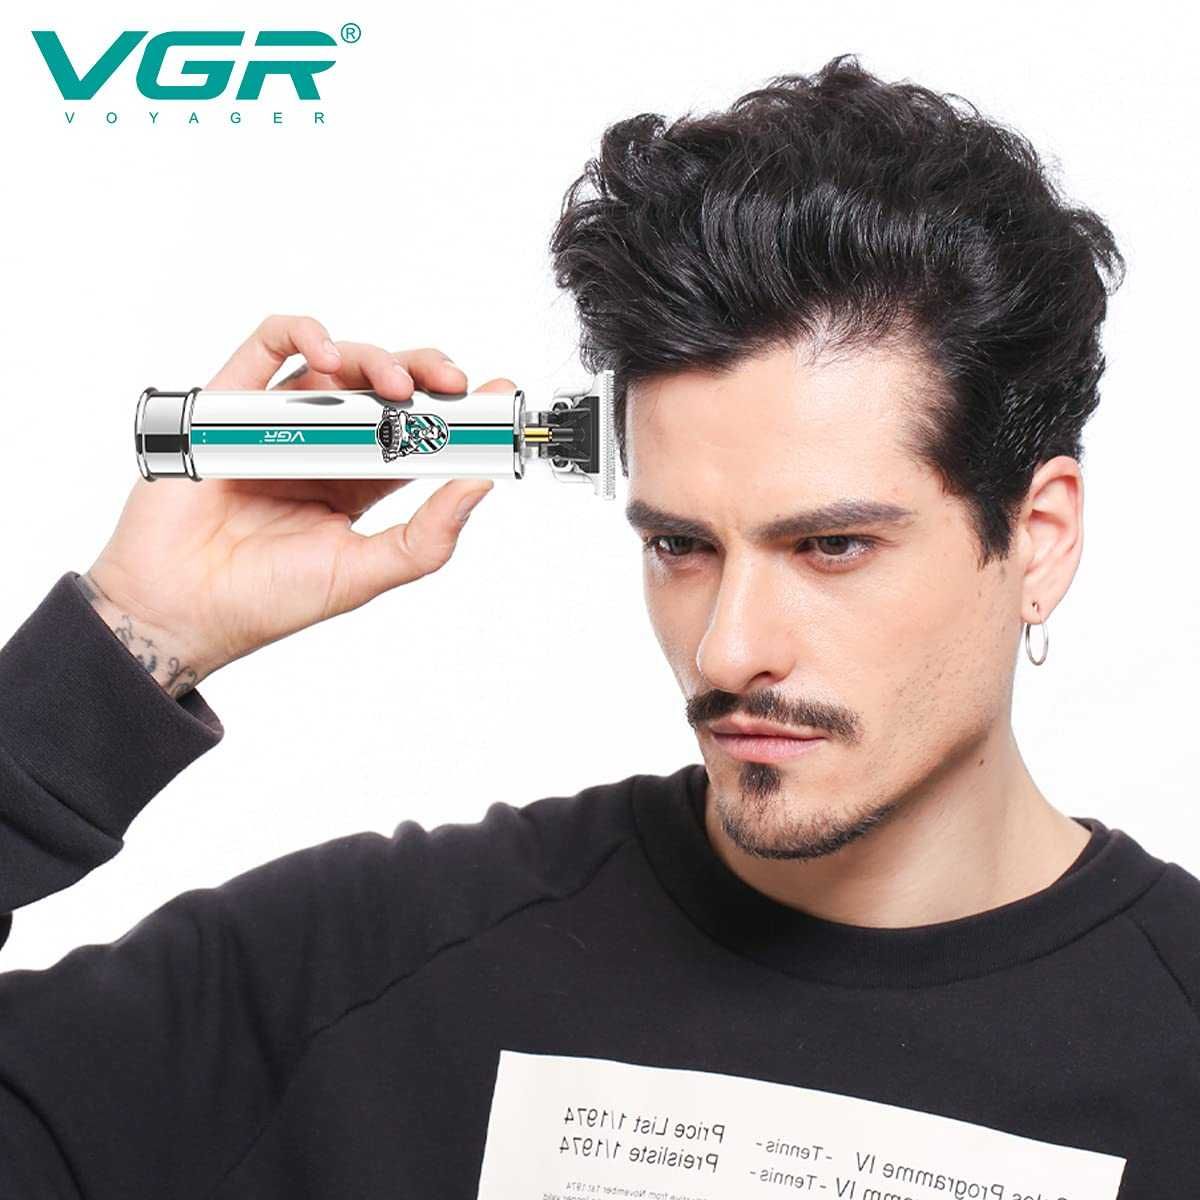 Машинка за подстригване VGR V-079, тример за подстригване